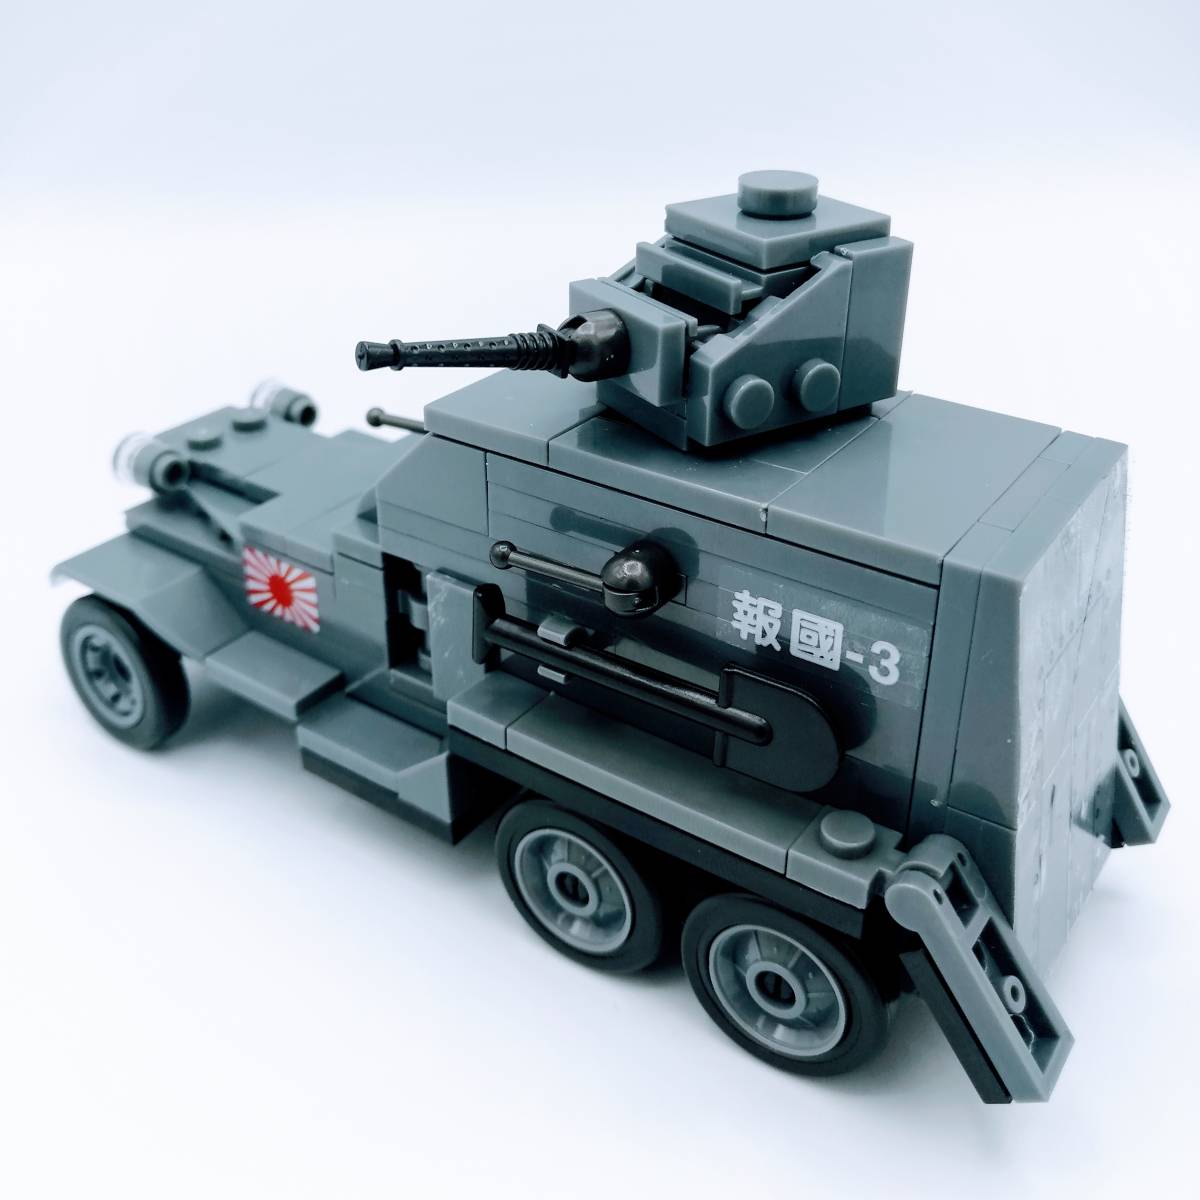 Paypayフリマ 国内発送 レゴ互換 大日本帝国海軍 九三式装甲自動車 組み立てブロック 外箱なし 新品 送料込